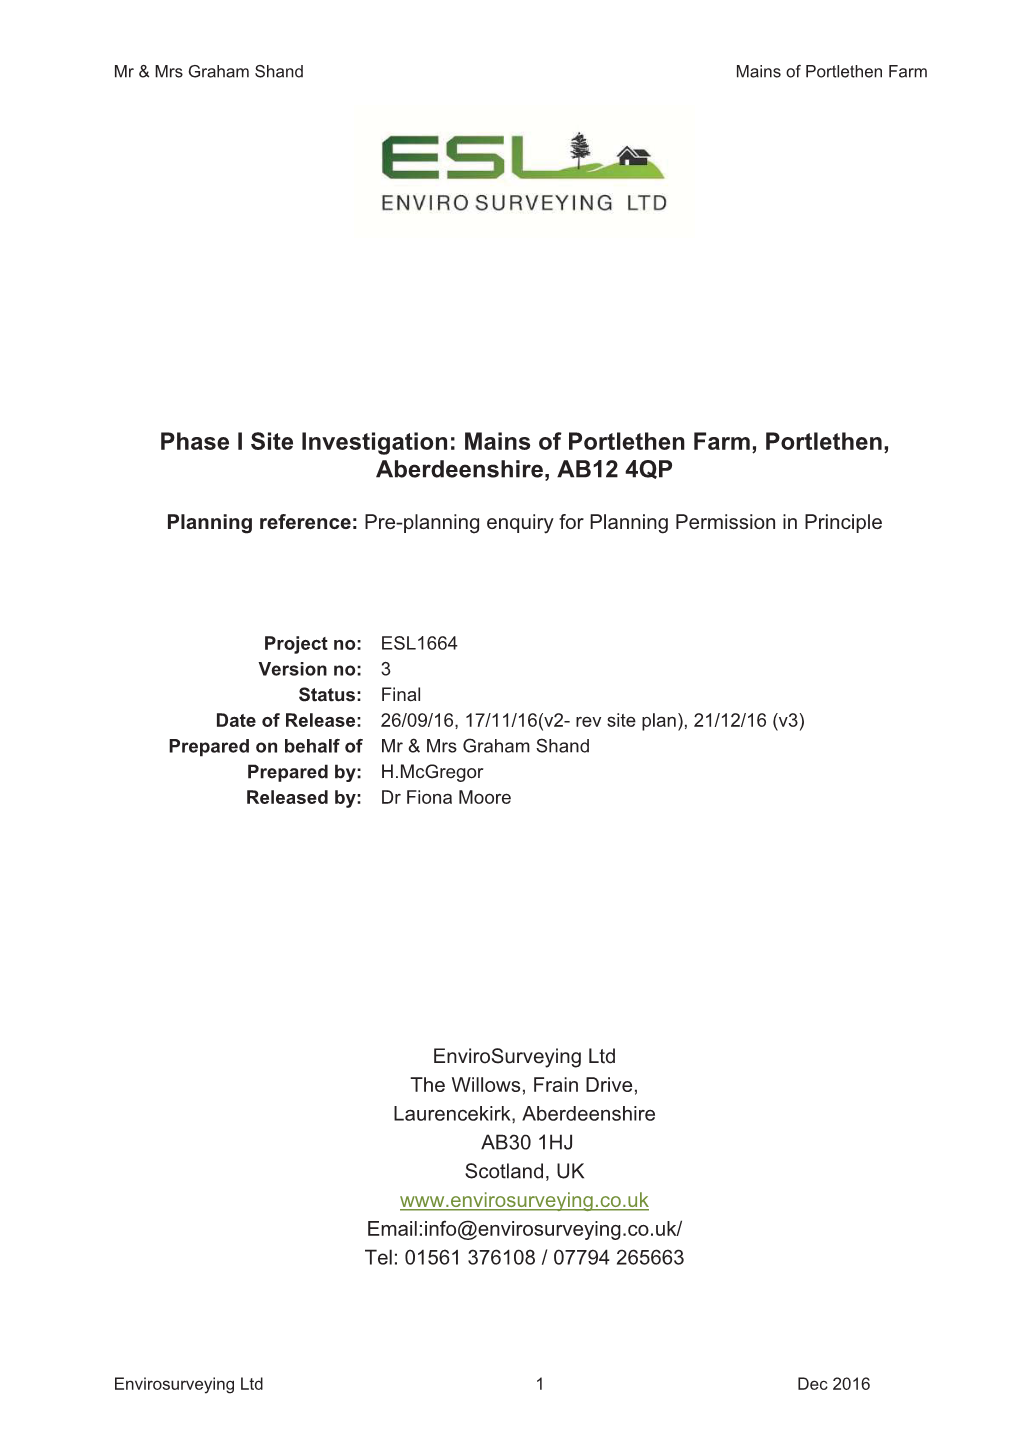 Phase I Site Investigation: Mains of Portlethen Farm, Portlethen, Aberdeenshire, AB12 4QP